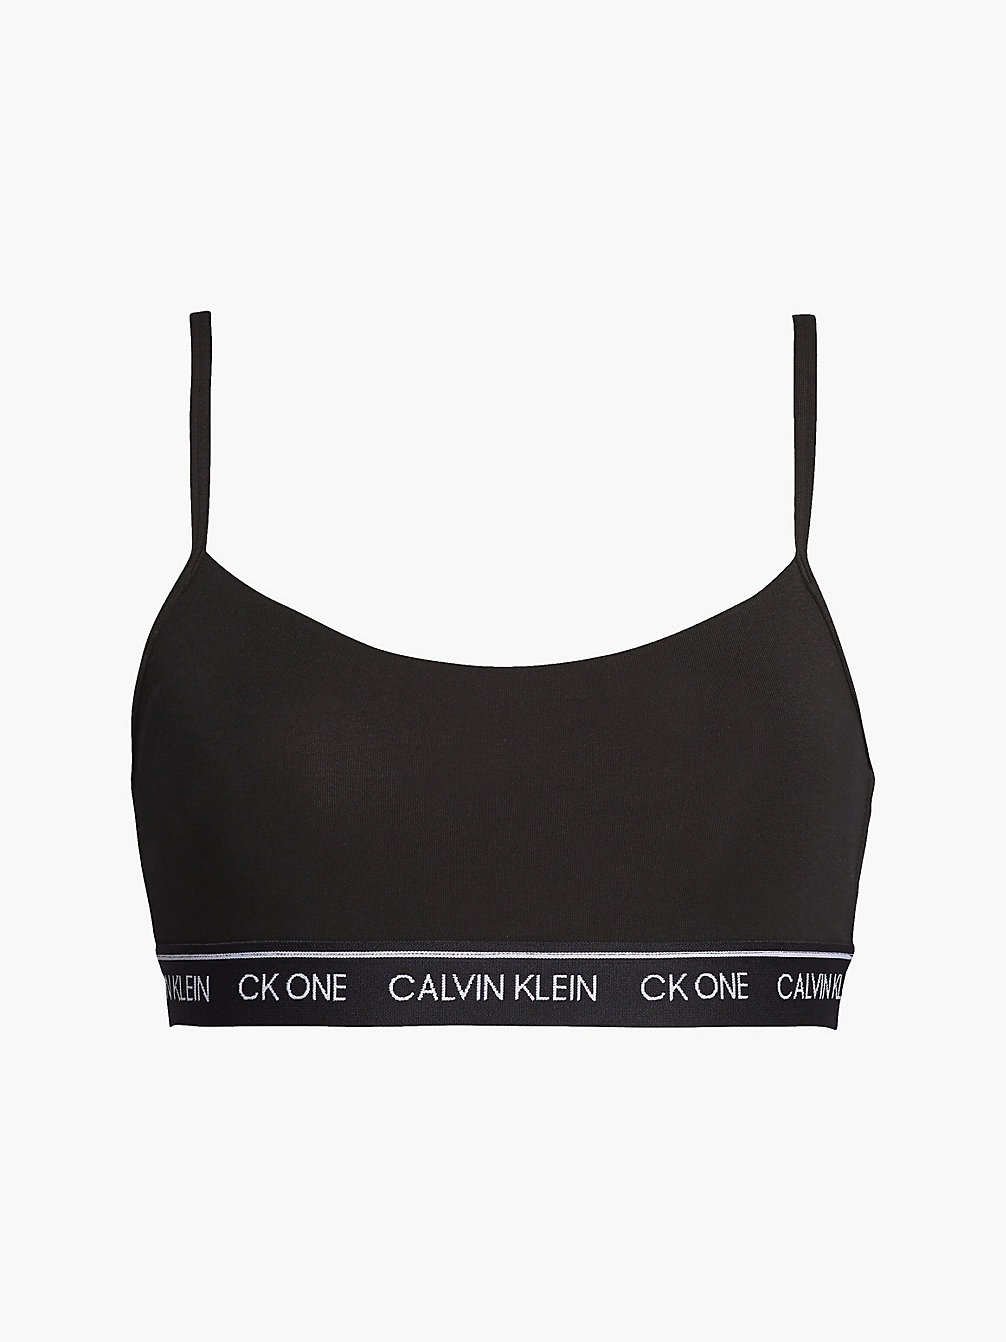 BLACK String Bralette - CK One undefined women Calvin Klein